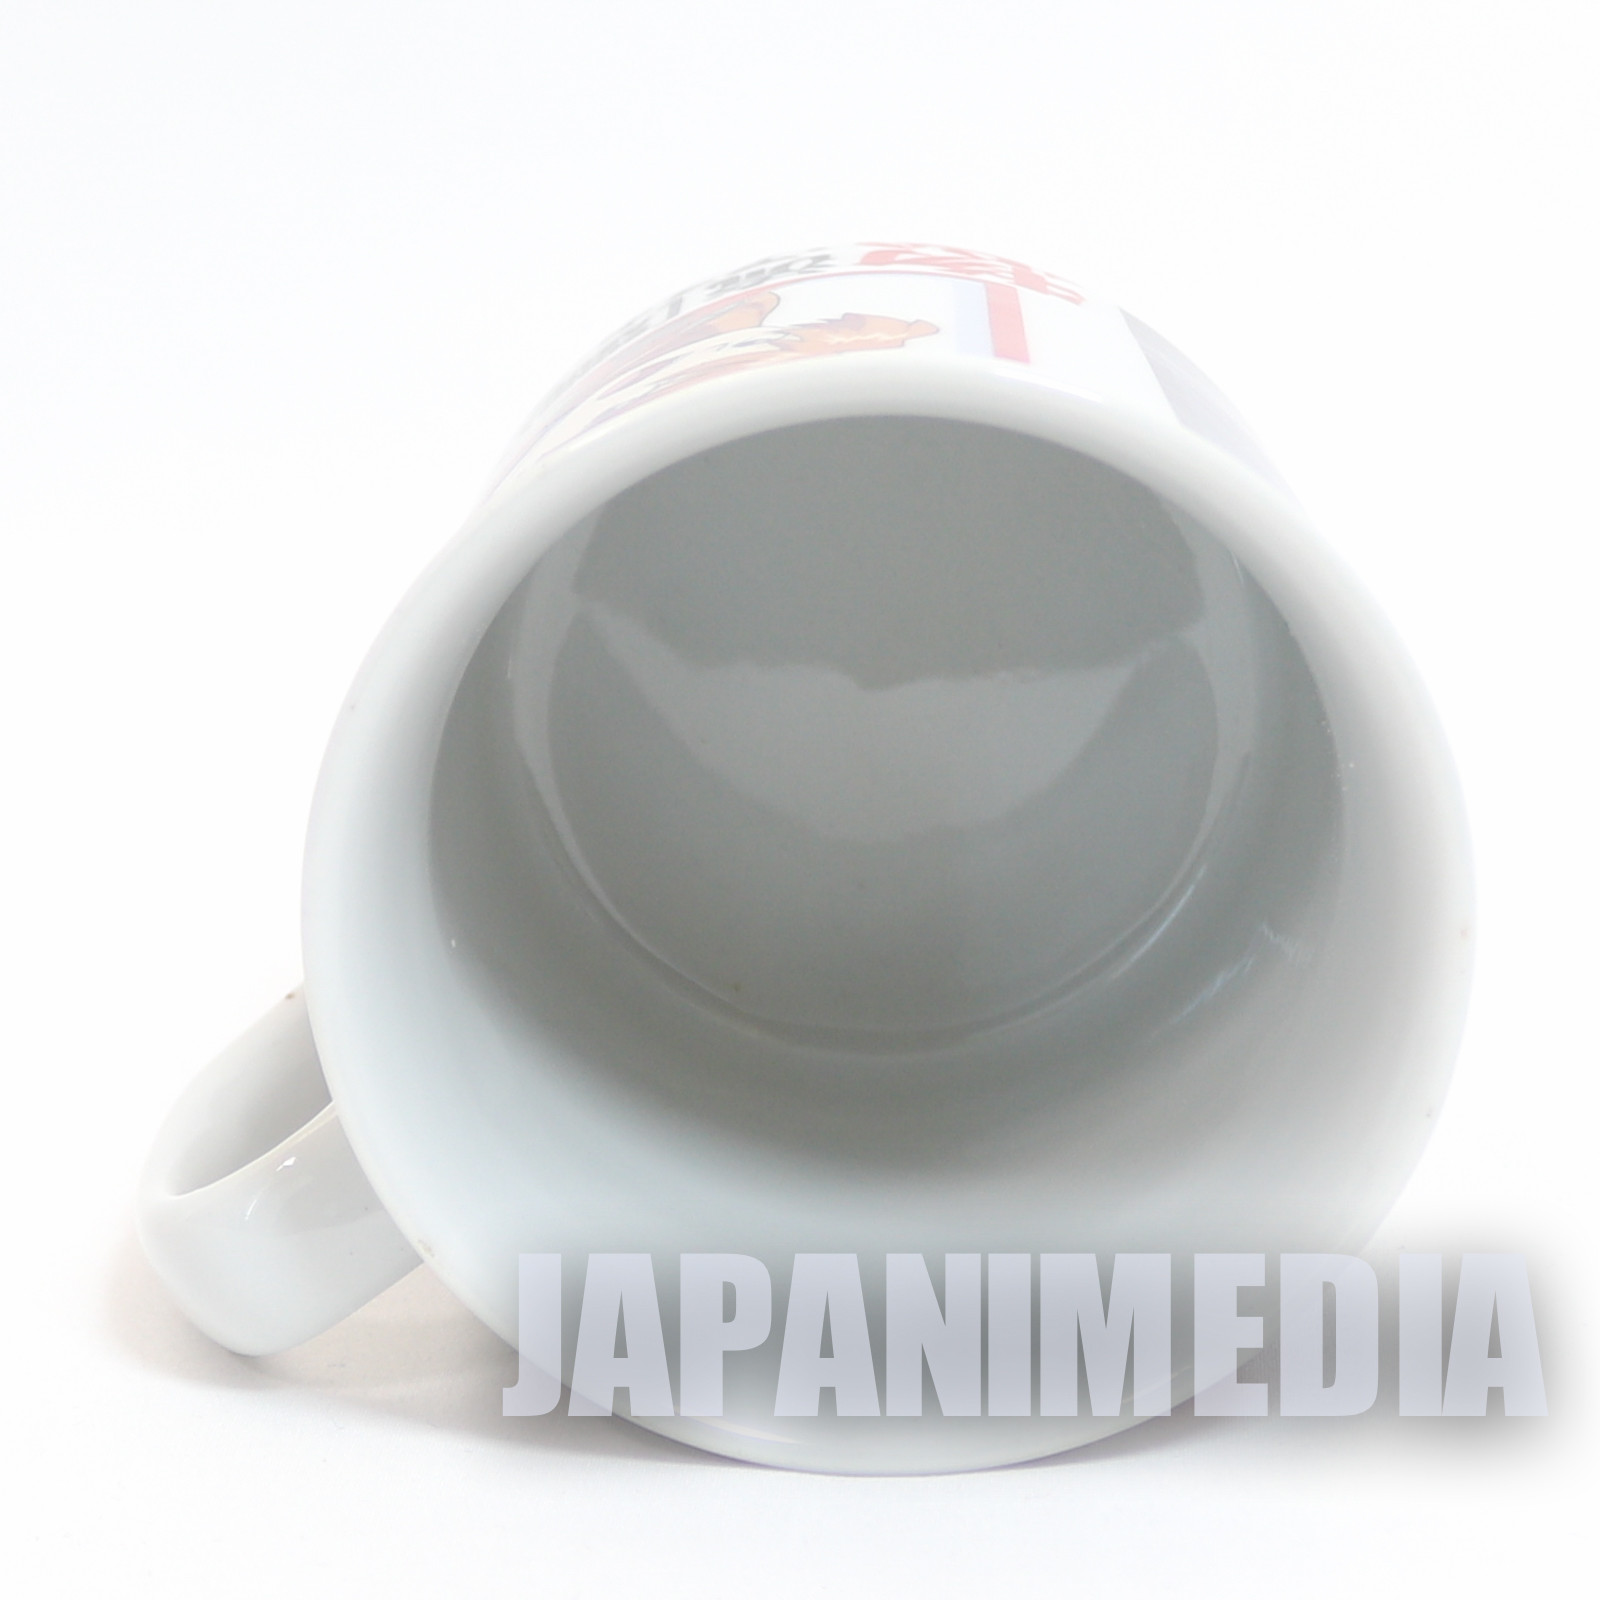 Evangelion Character Mug Asuka Langley Movic JAPAN ANIME